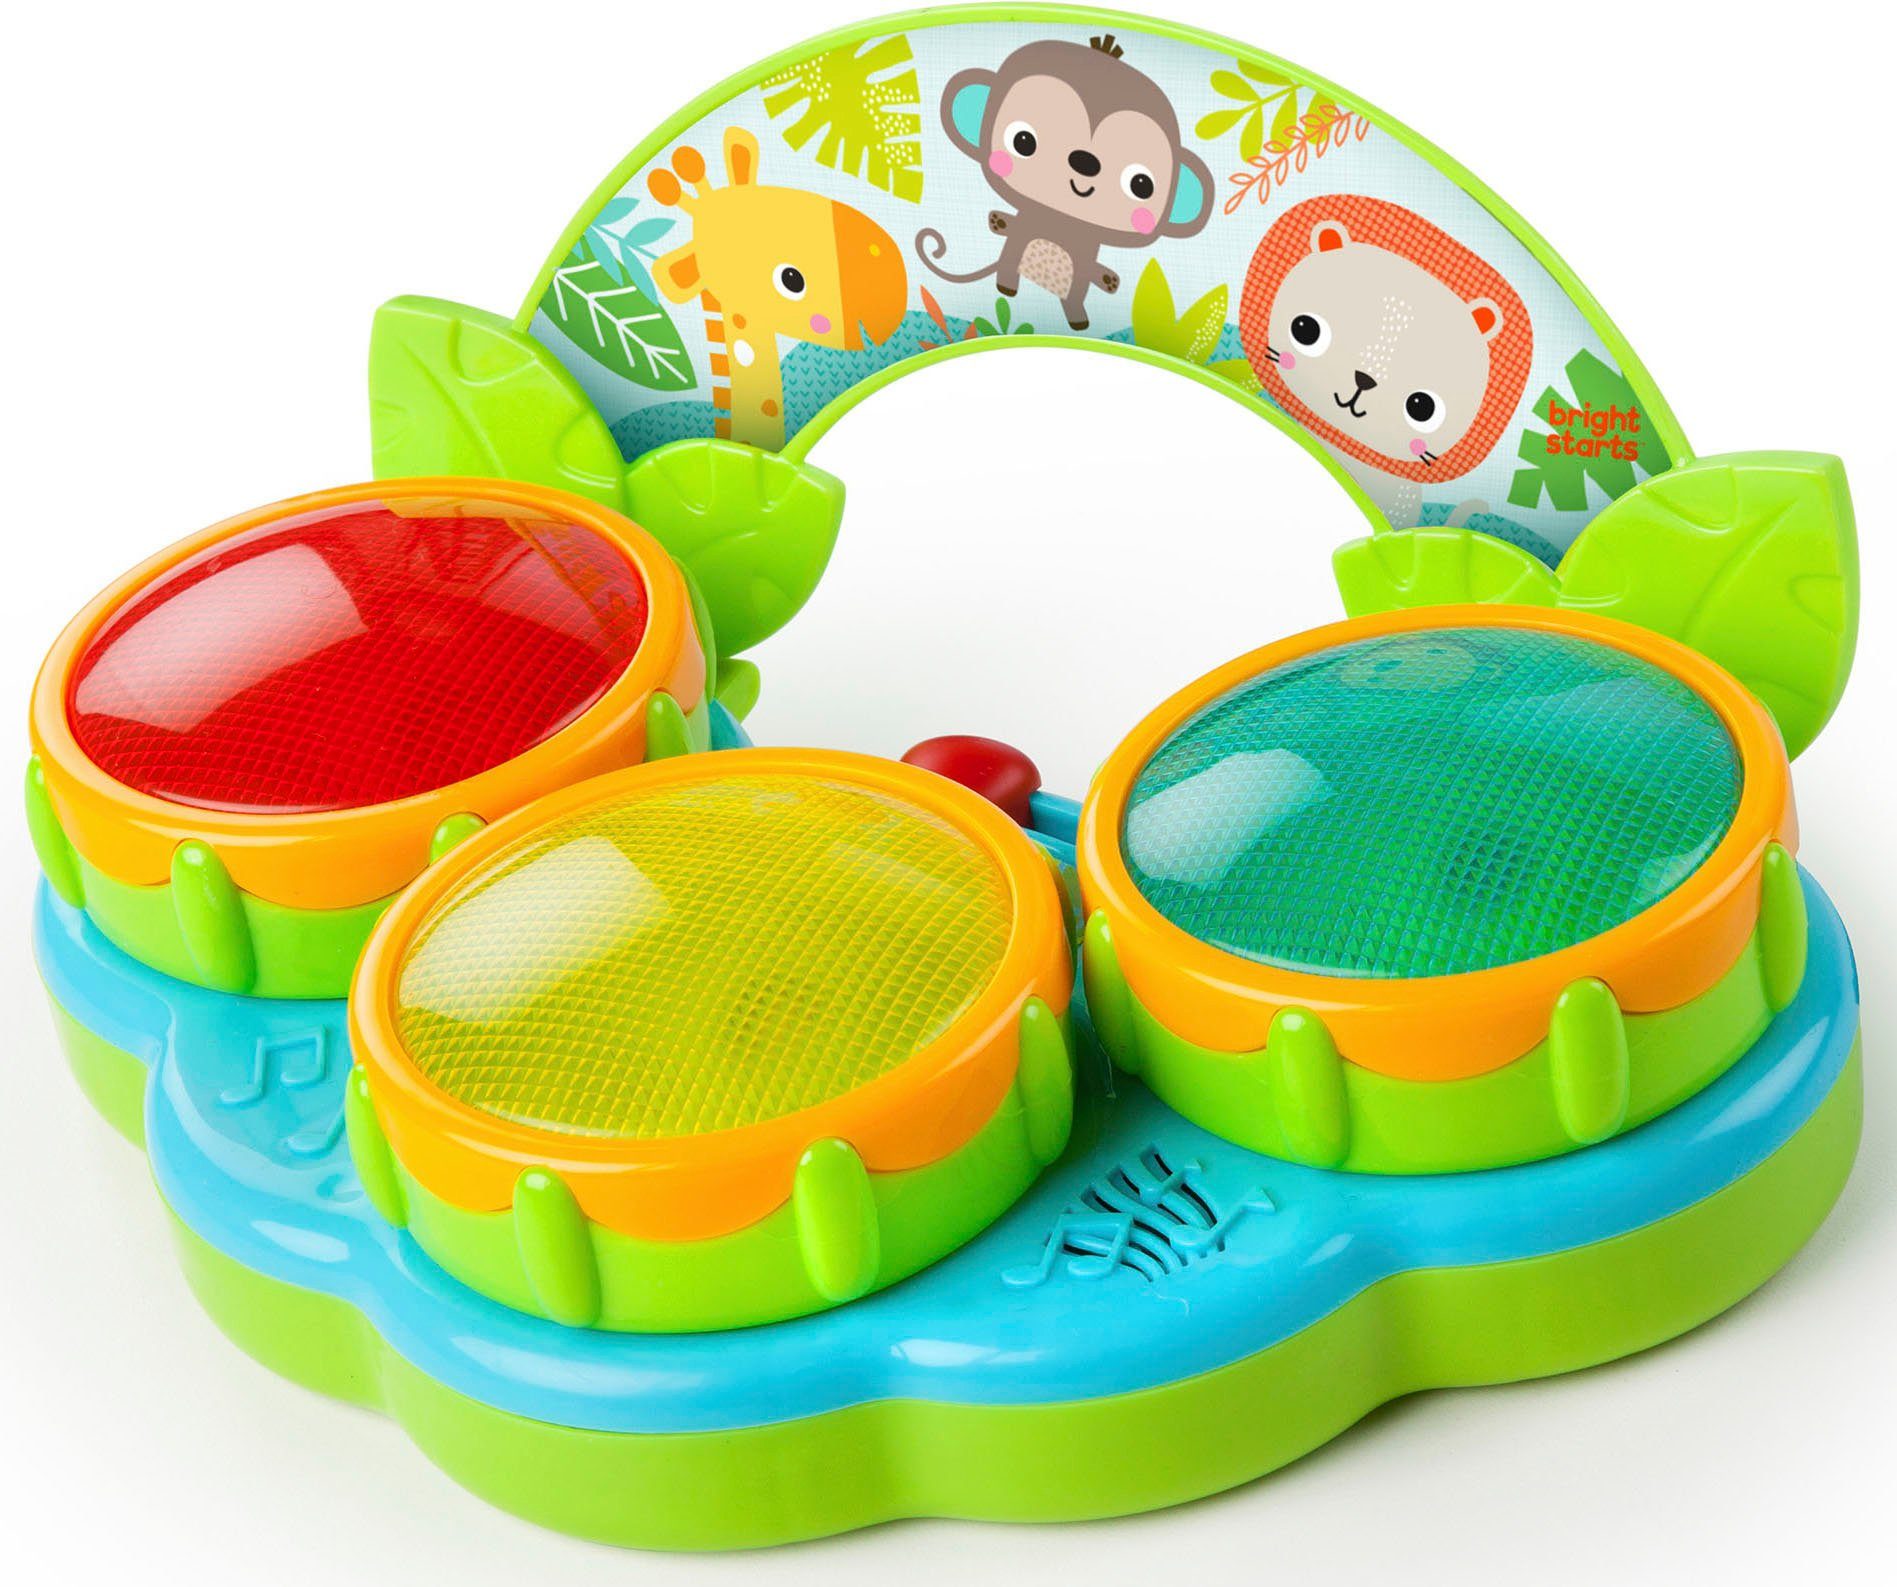 Bright Starts Spielzeug-Musikinstrument Safari Beats, mit Licht und Sound